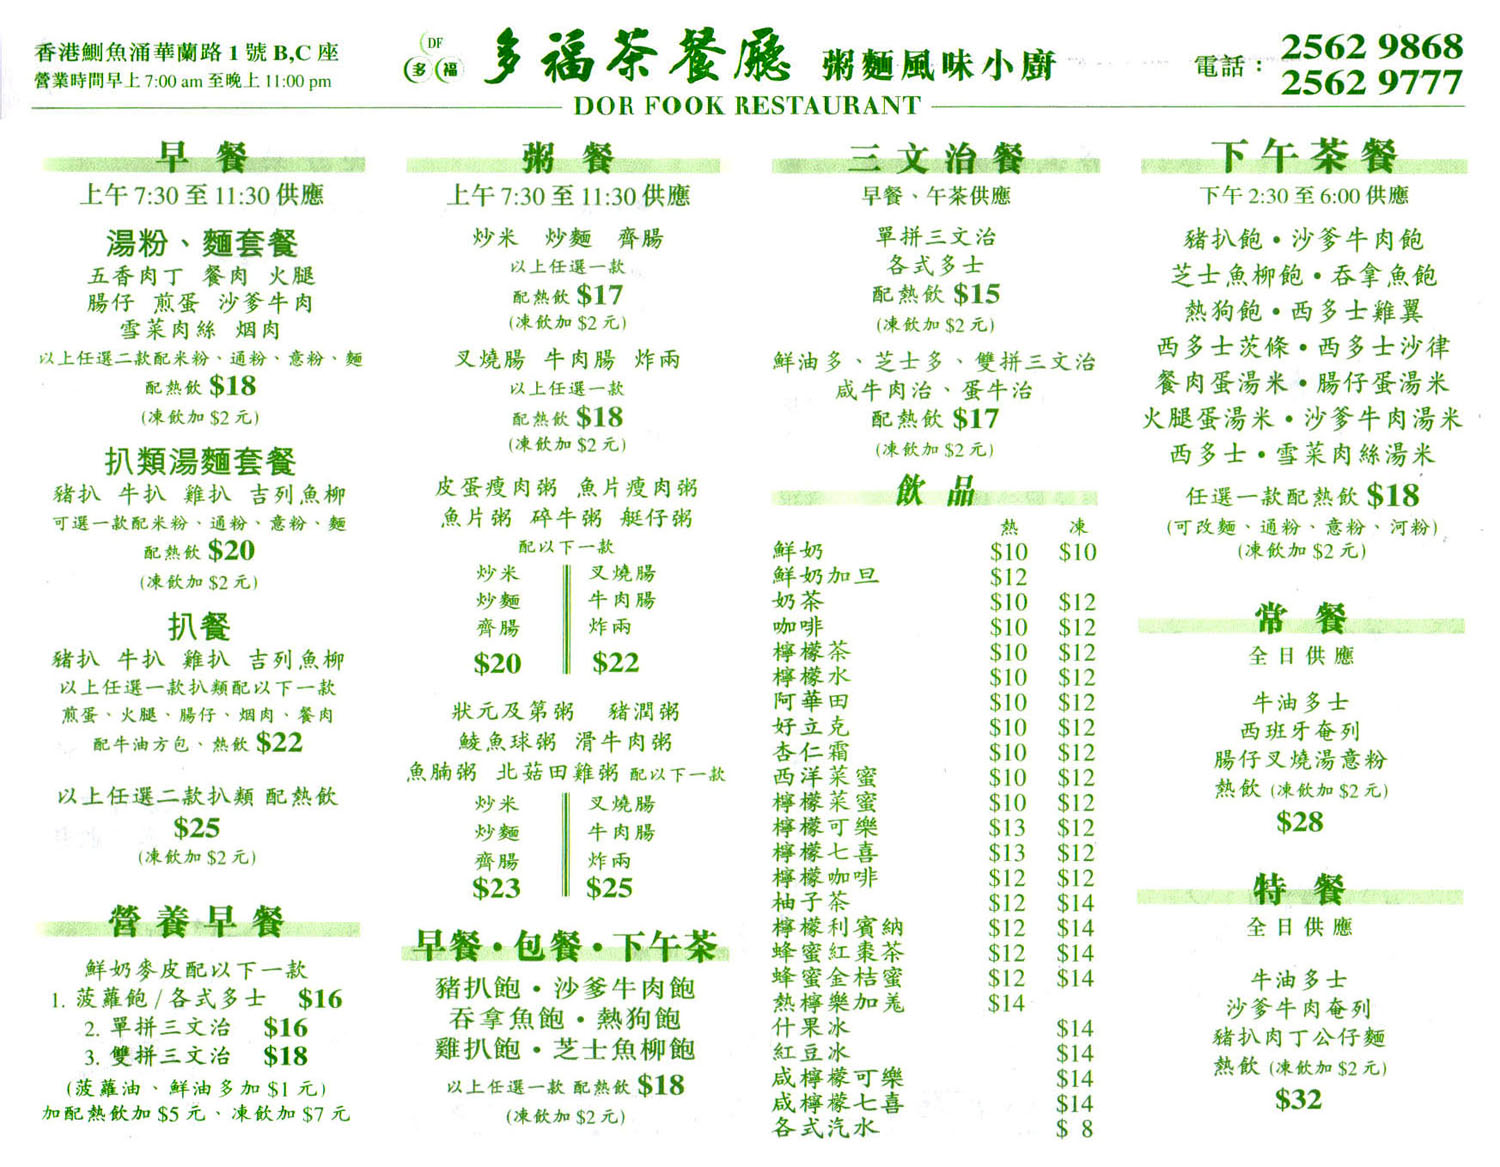 香港九龍新界區茶餐廳快餐店餐廳餐牌美食外賣套餐價目表fast food take away menu promotion package hong kong